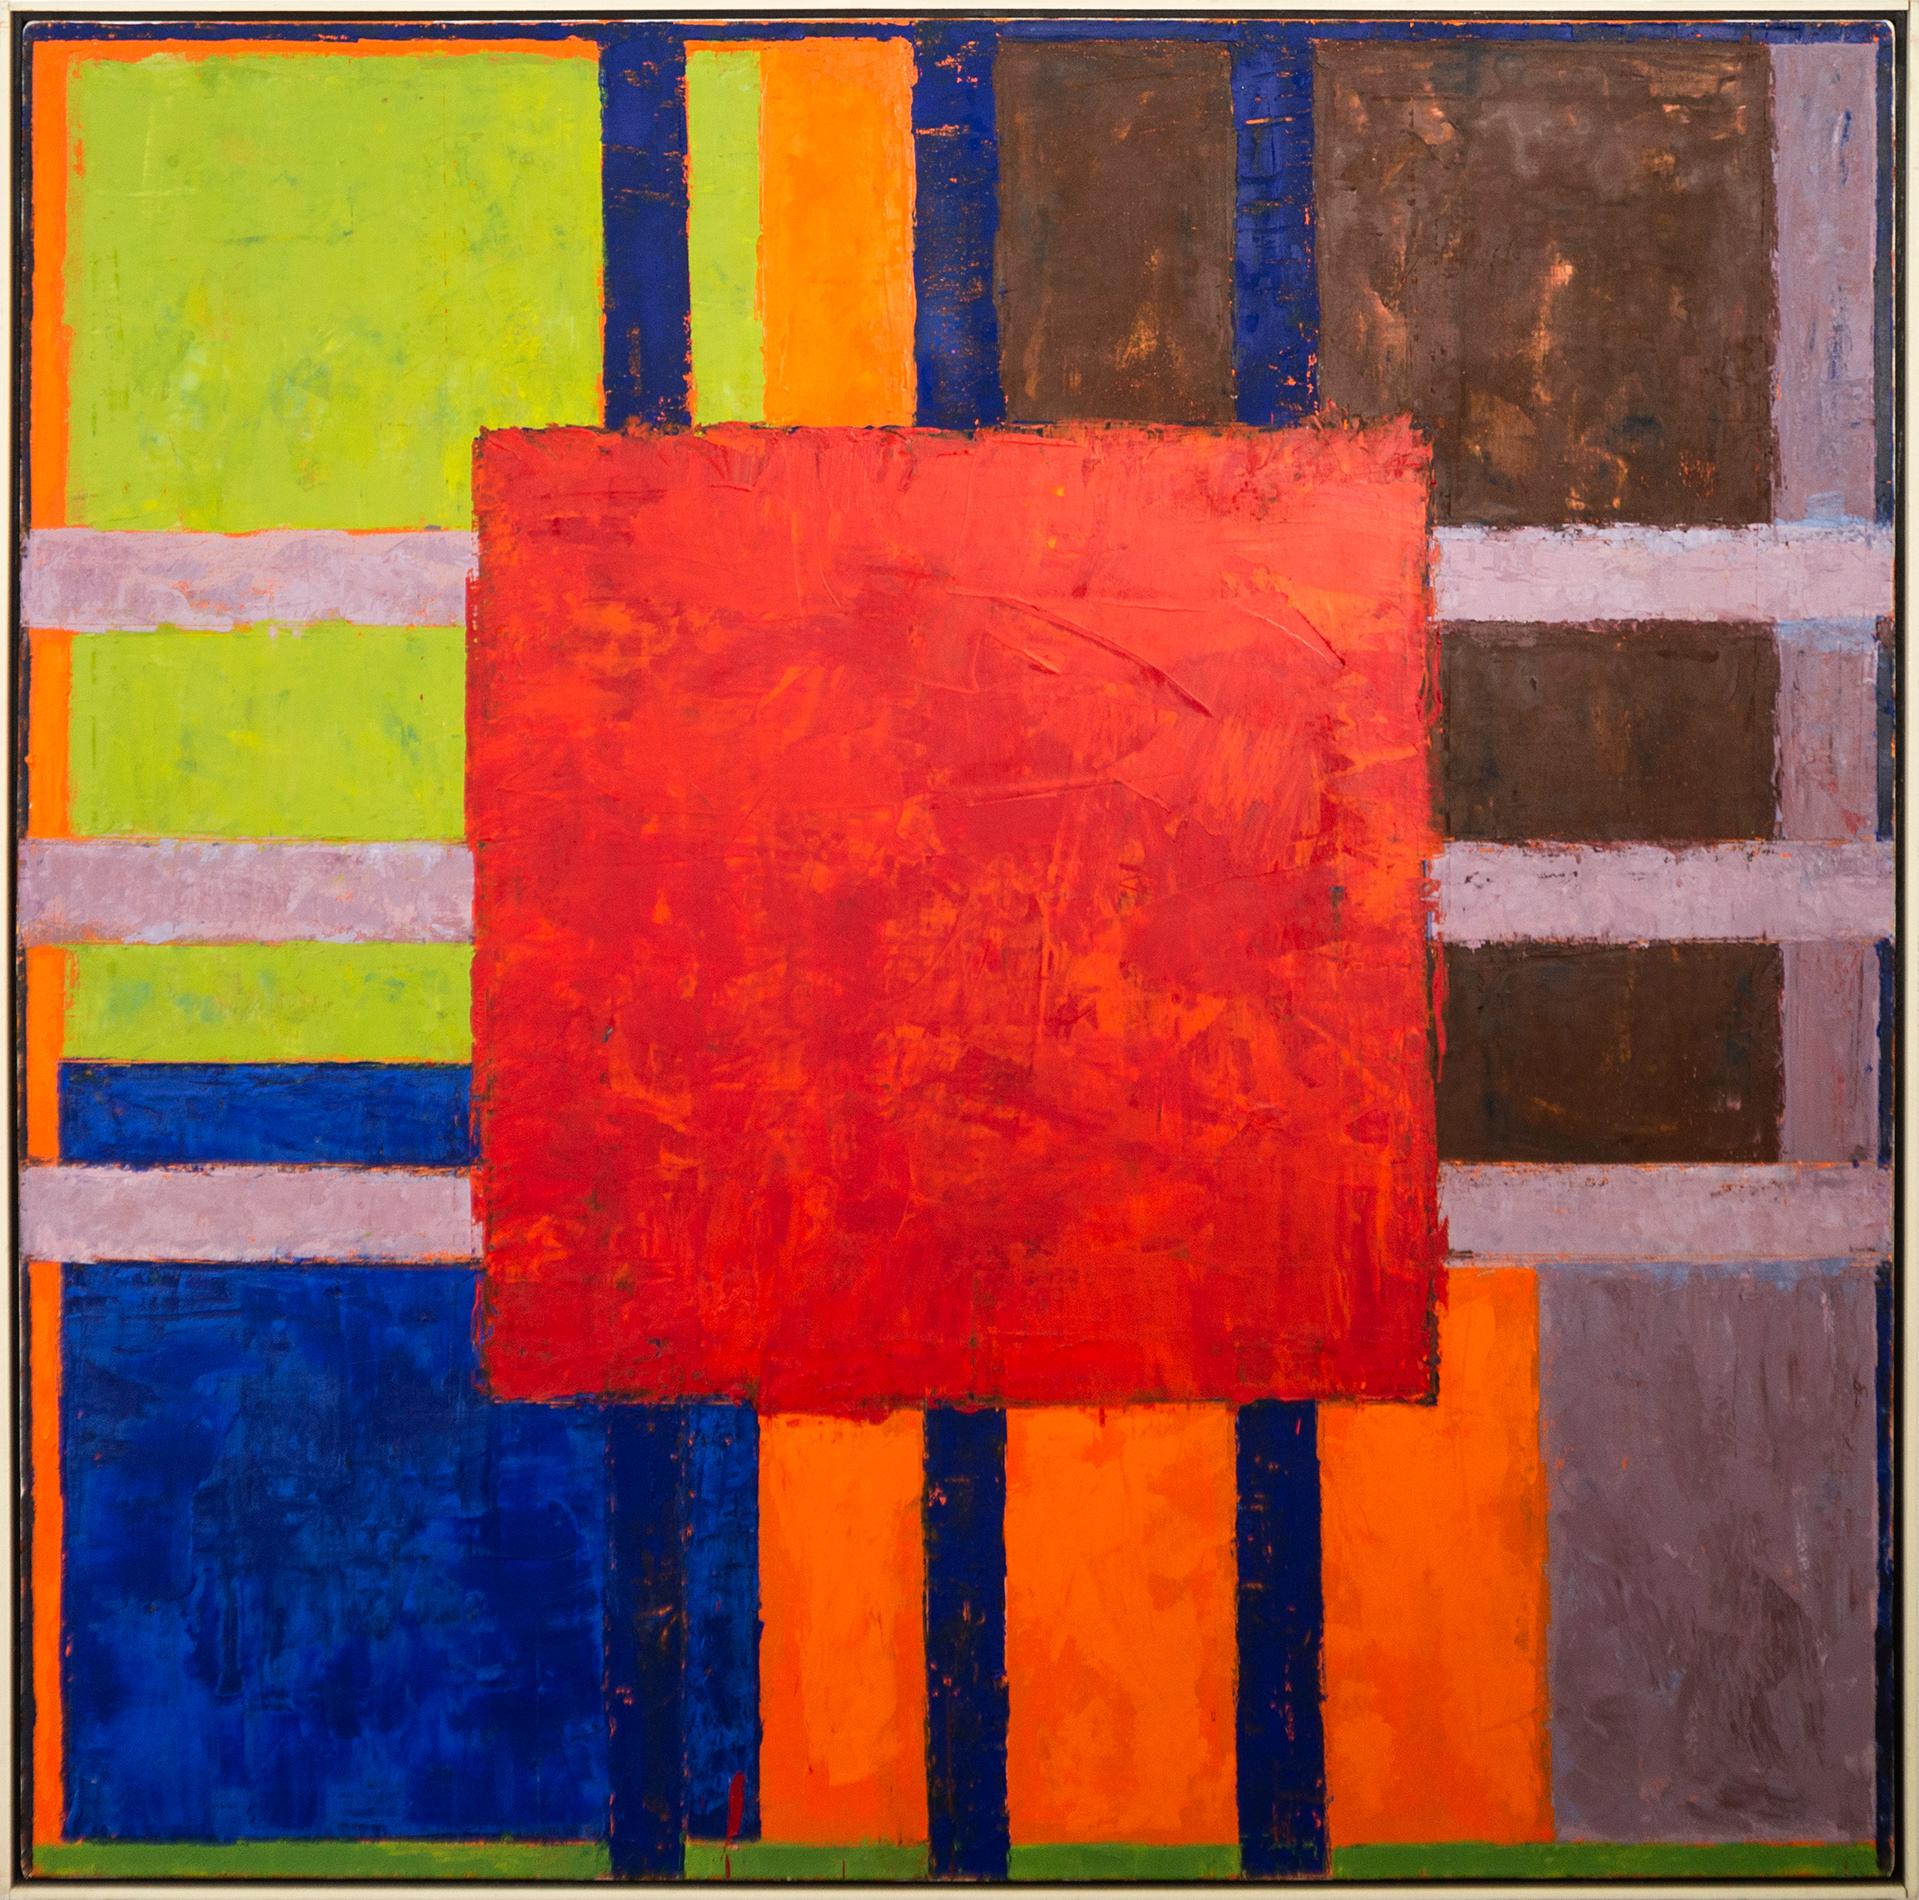 Abstract Painting David Sorensen - Havana No 6, Red - audacieux, lumineux, coloré, abstrait, moderniste, huile sur toile